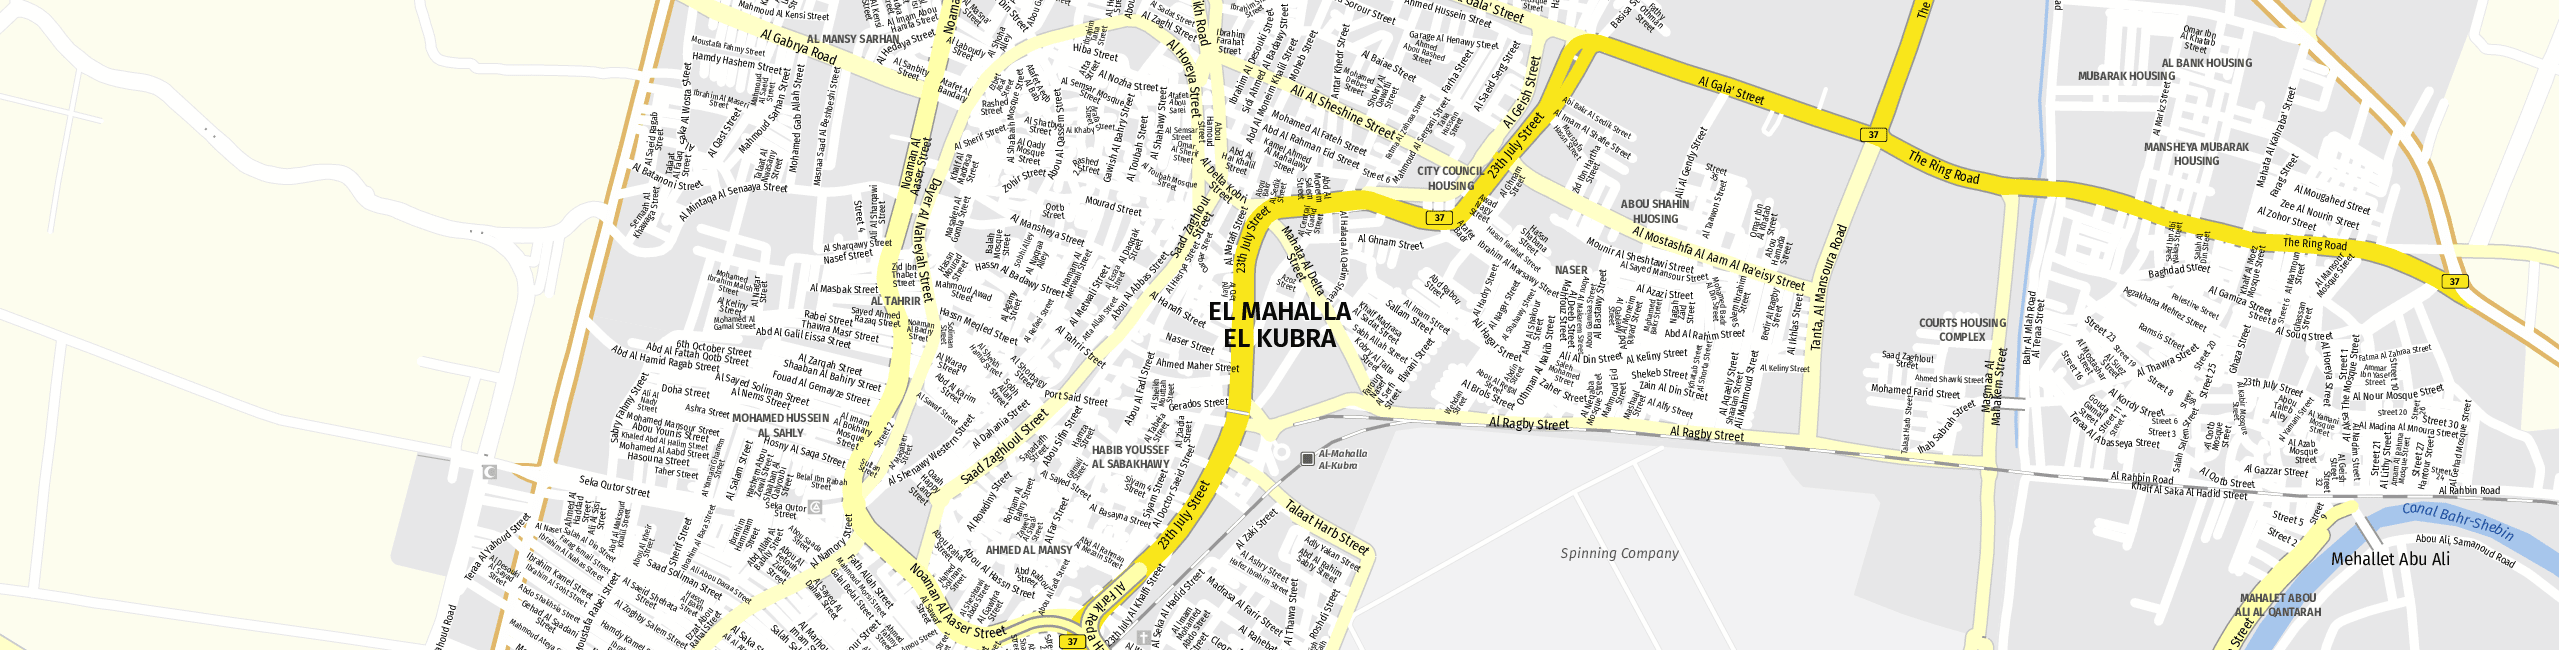 Stadtplan Mahalla al Kubra zum Downloaden.